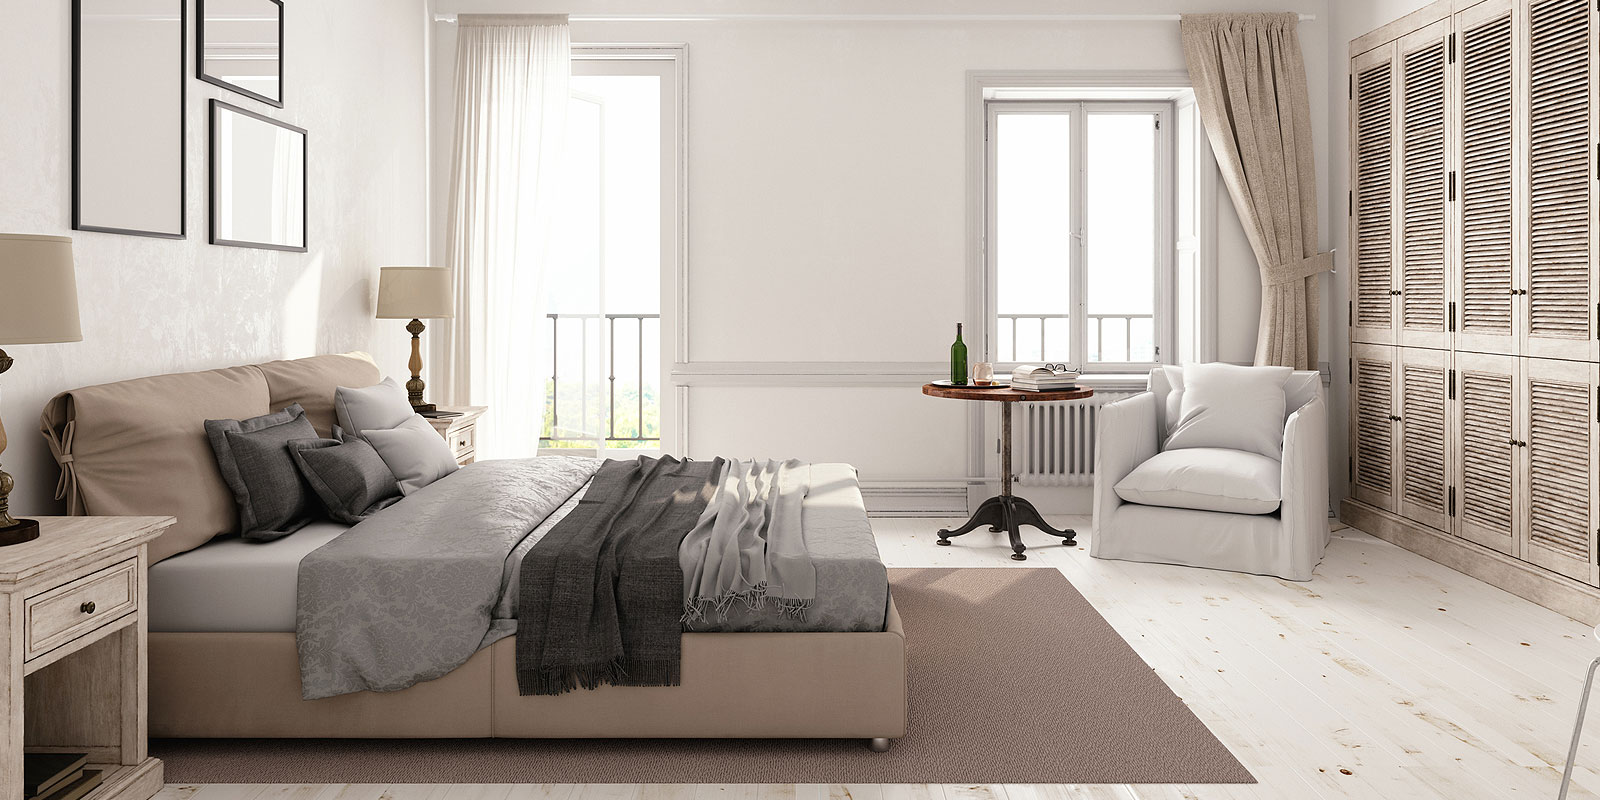 minimalist style of bedroom